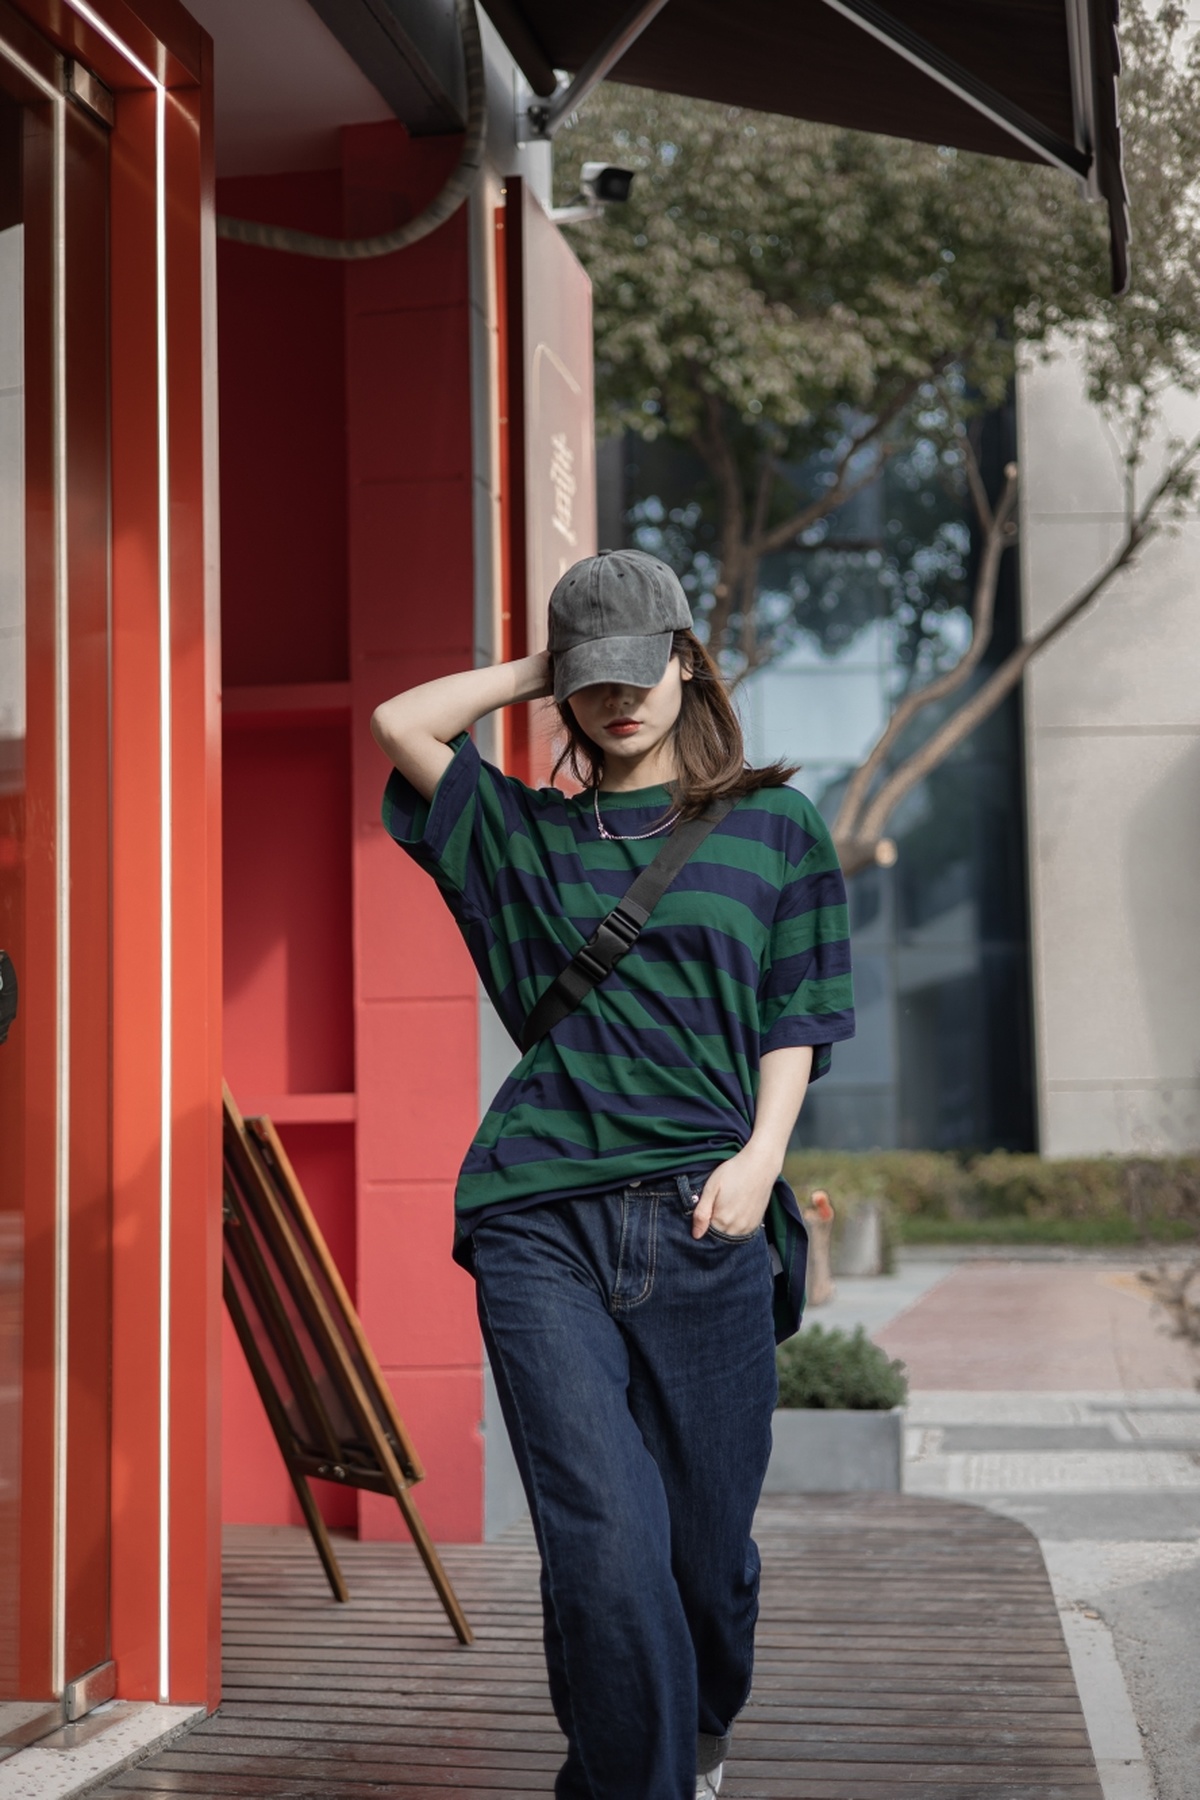 一个穿着条纹衬衫、戴着条纹帽子的年轻女子走在一栋红色建筑旁的人行道上